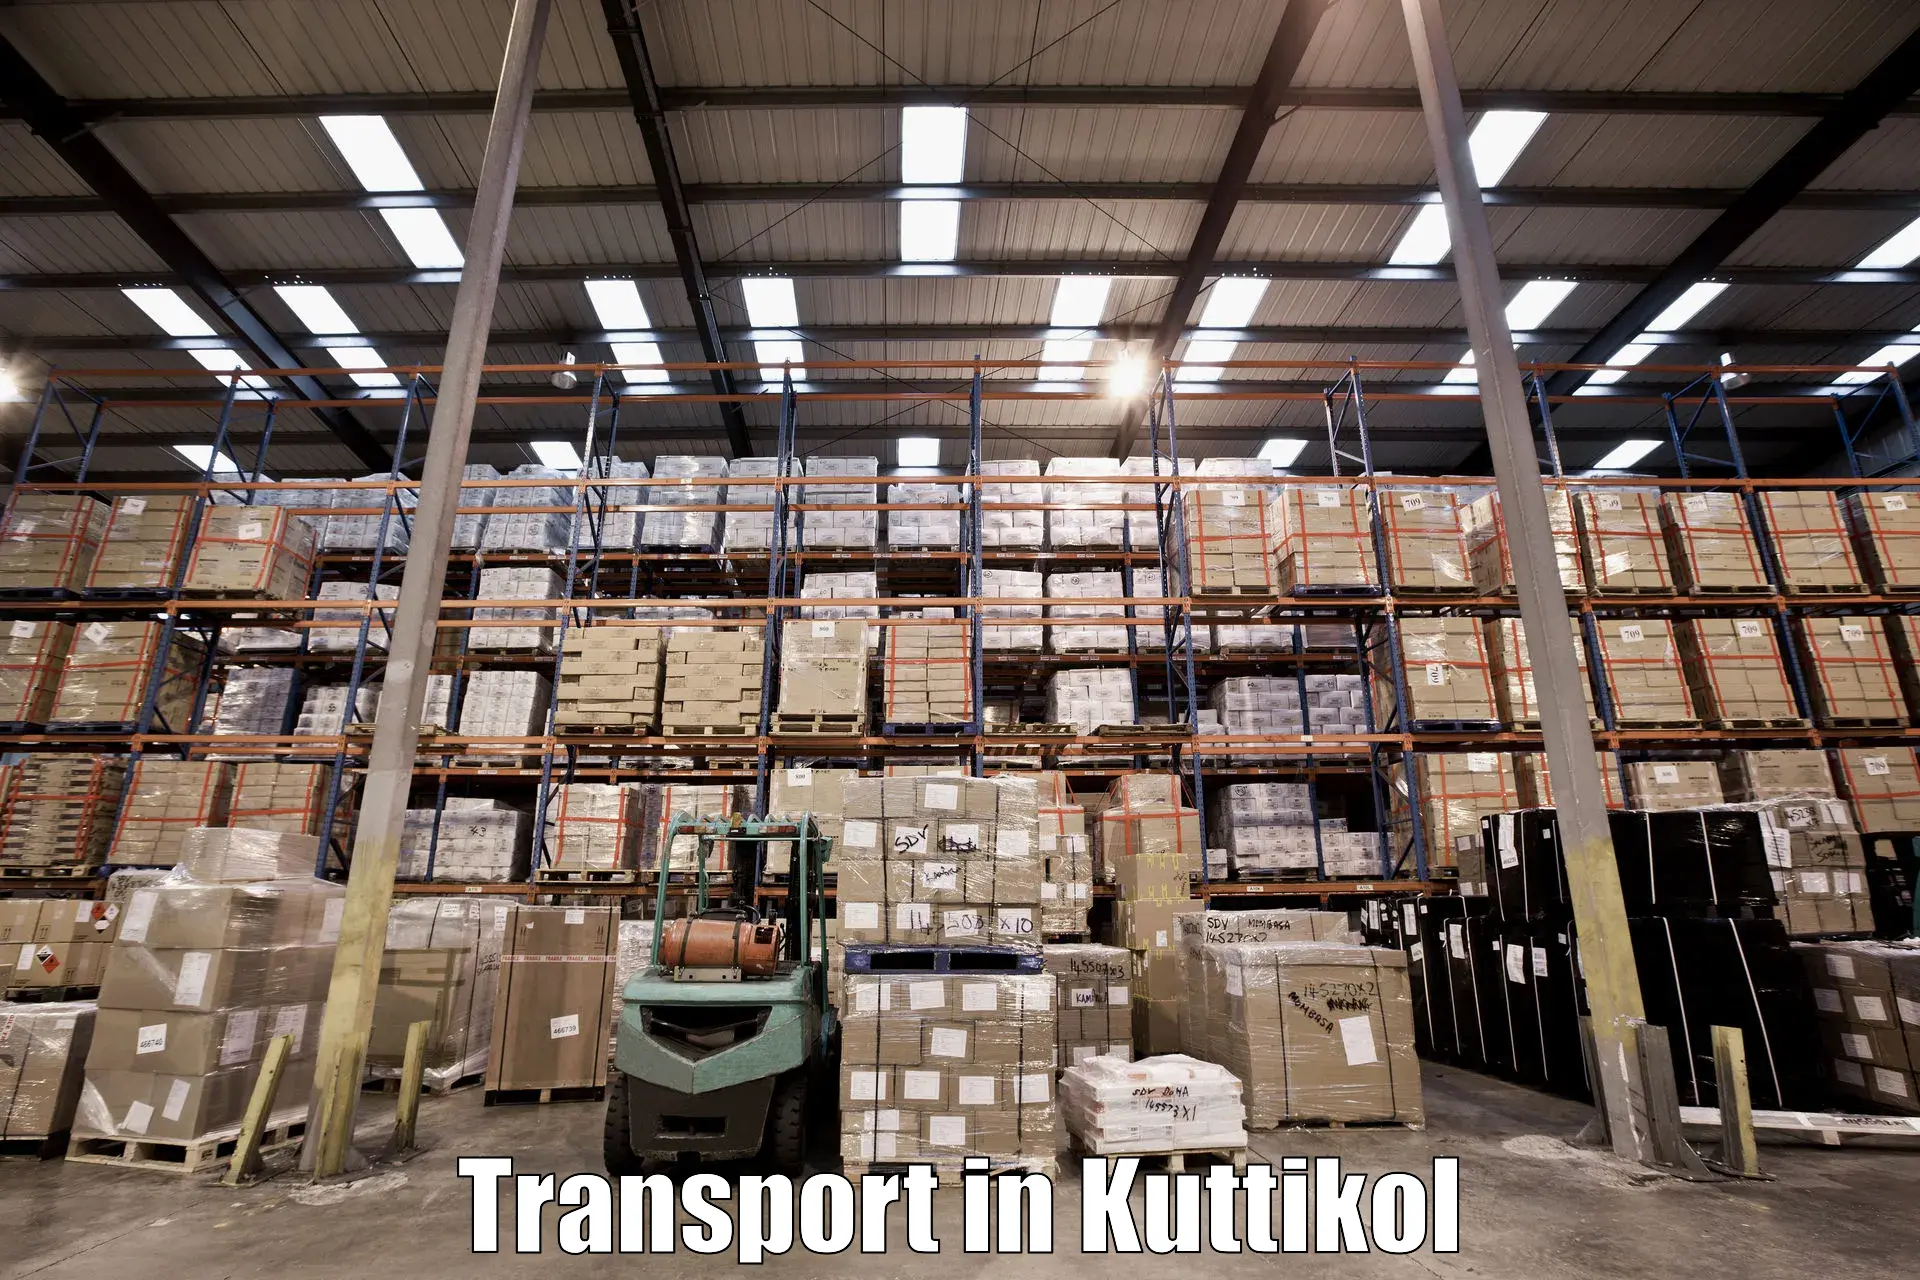 Air cargo transport services in Kuttikol